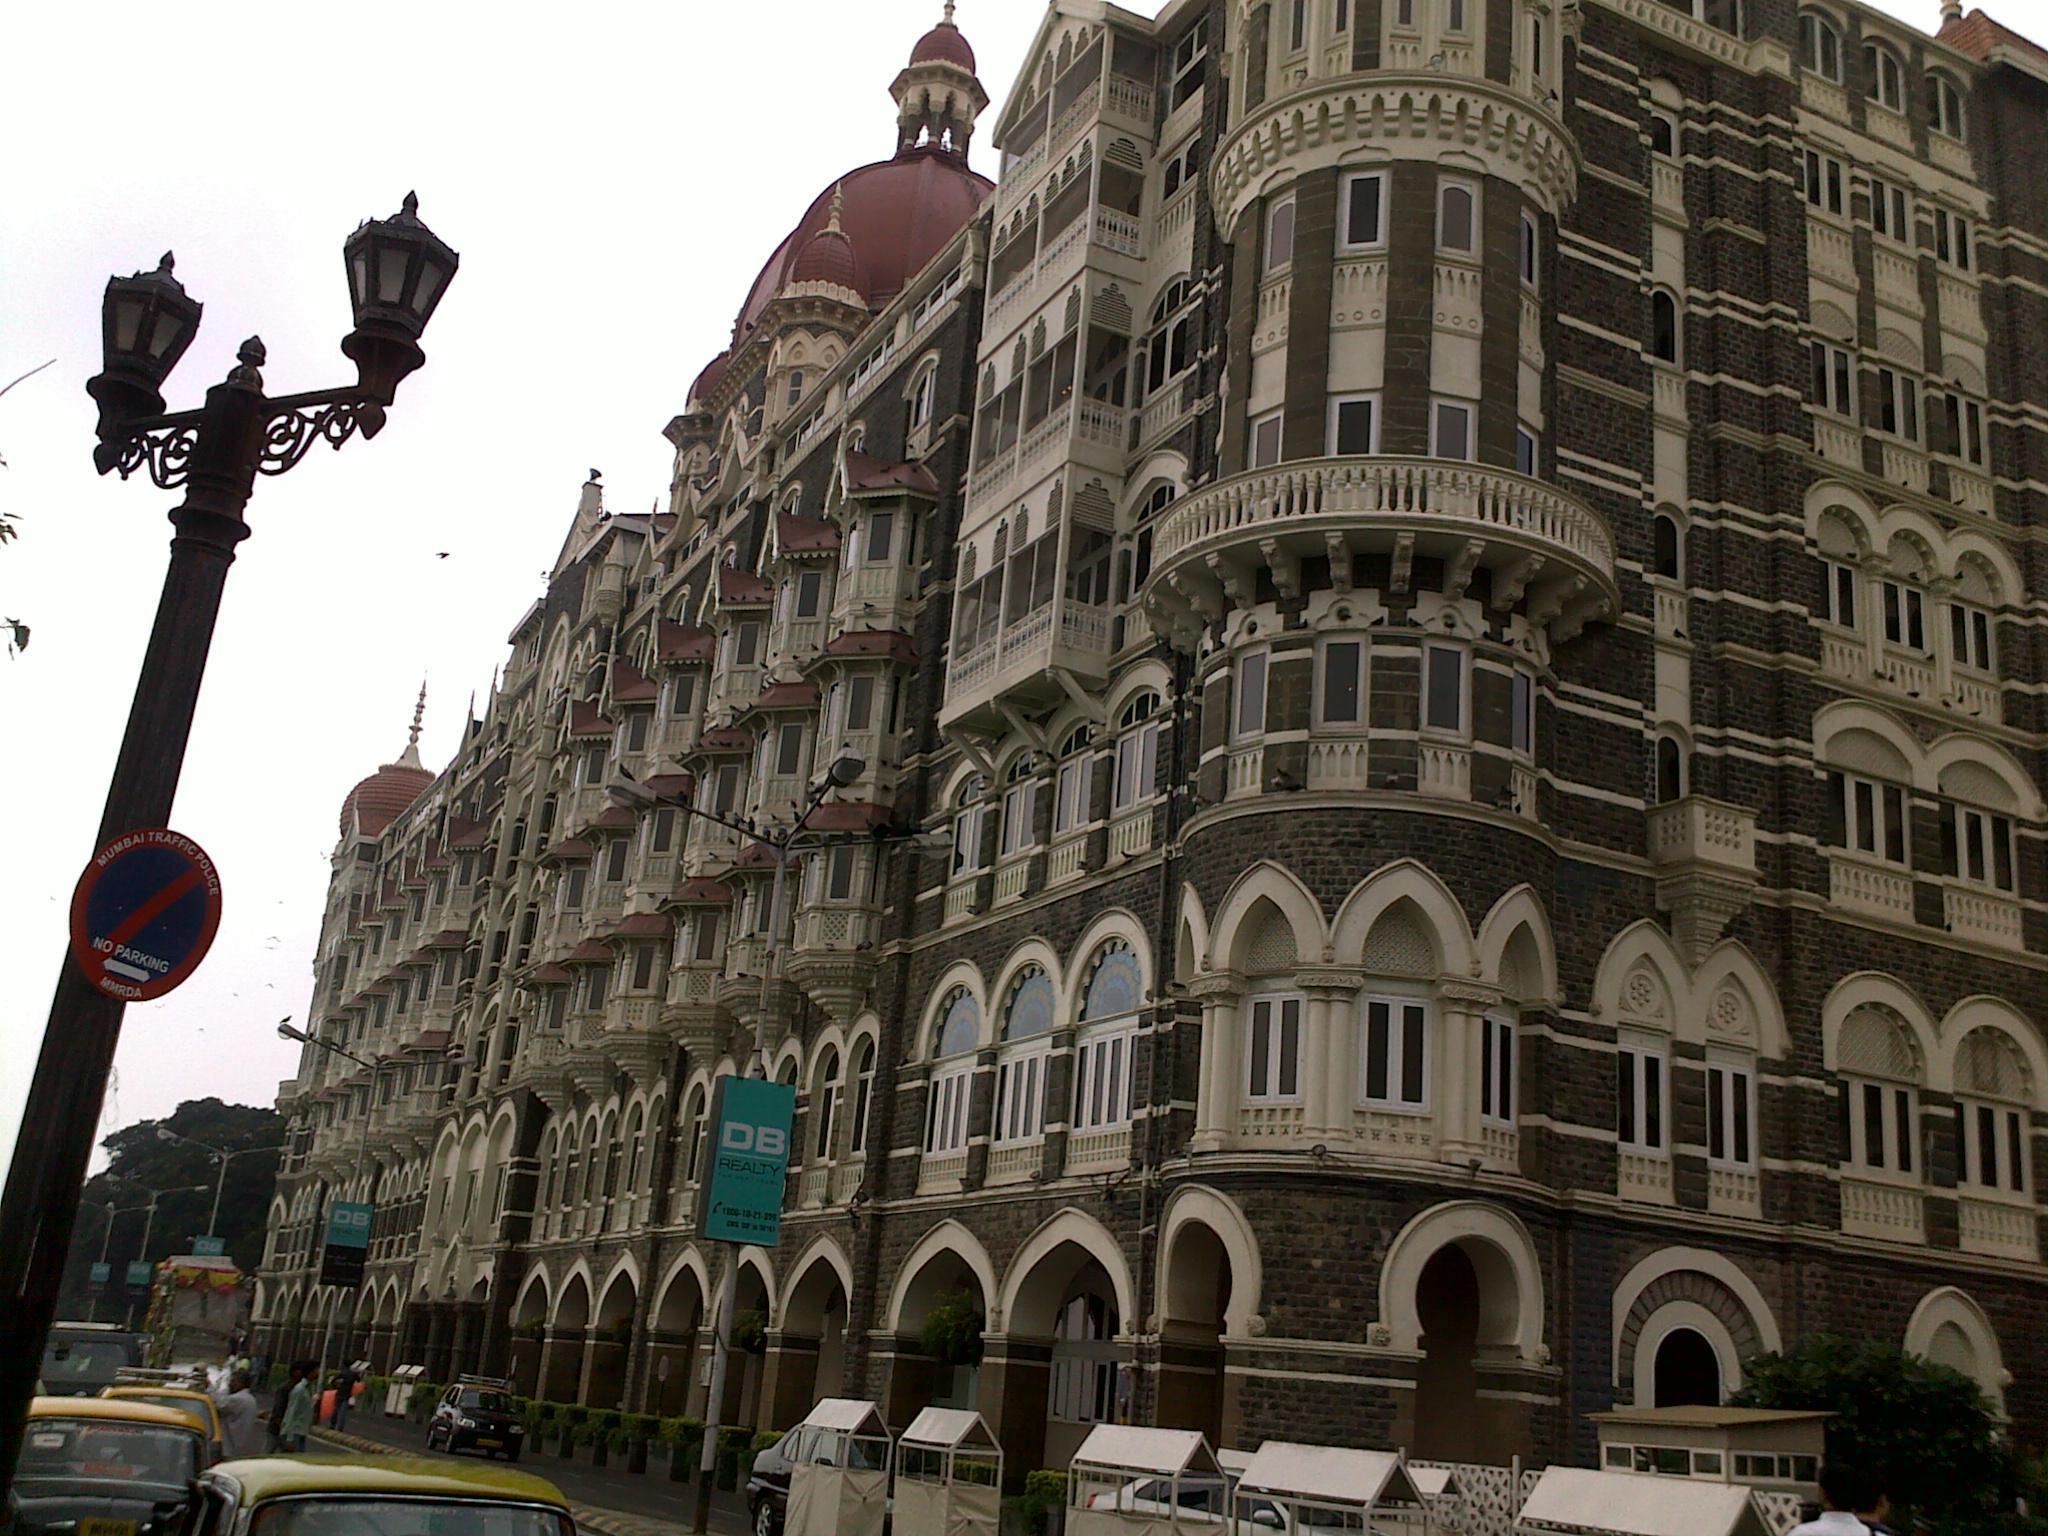 Hotel Taj Mahal Mumbai - Taj Mahal Palace & Tower , HD Wallpaper & Backgrounds